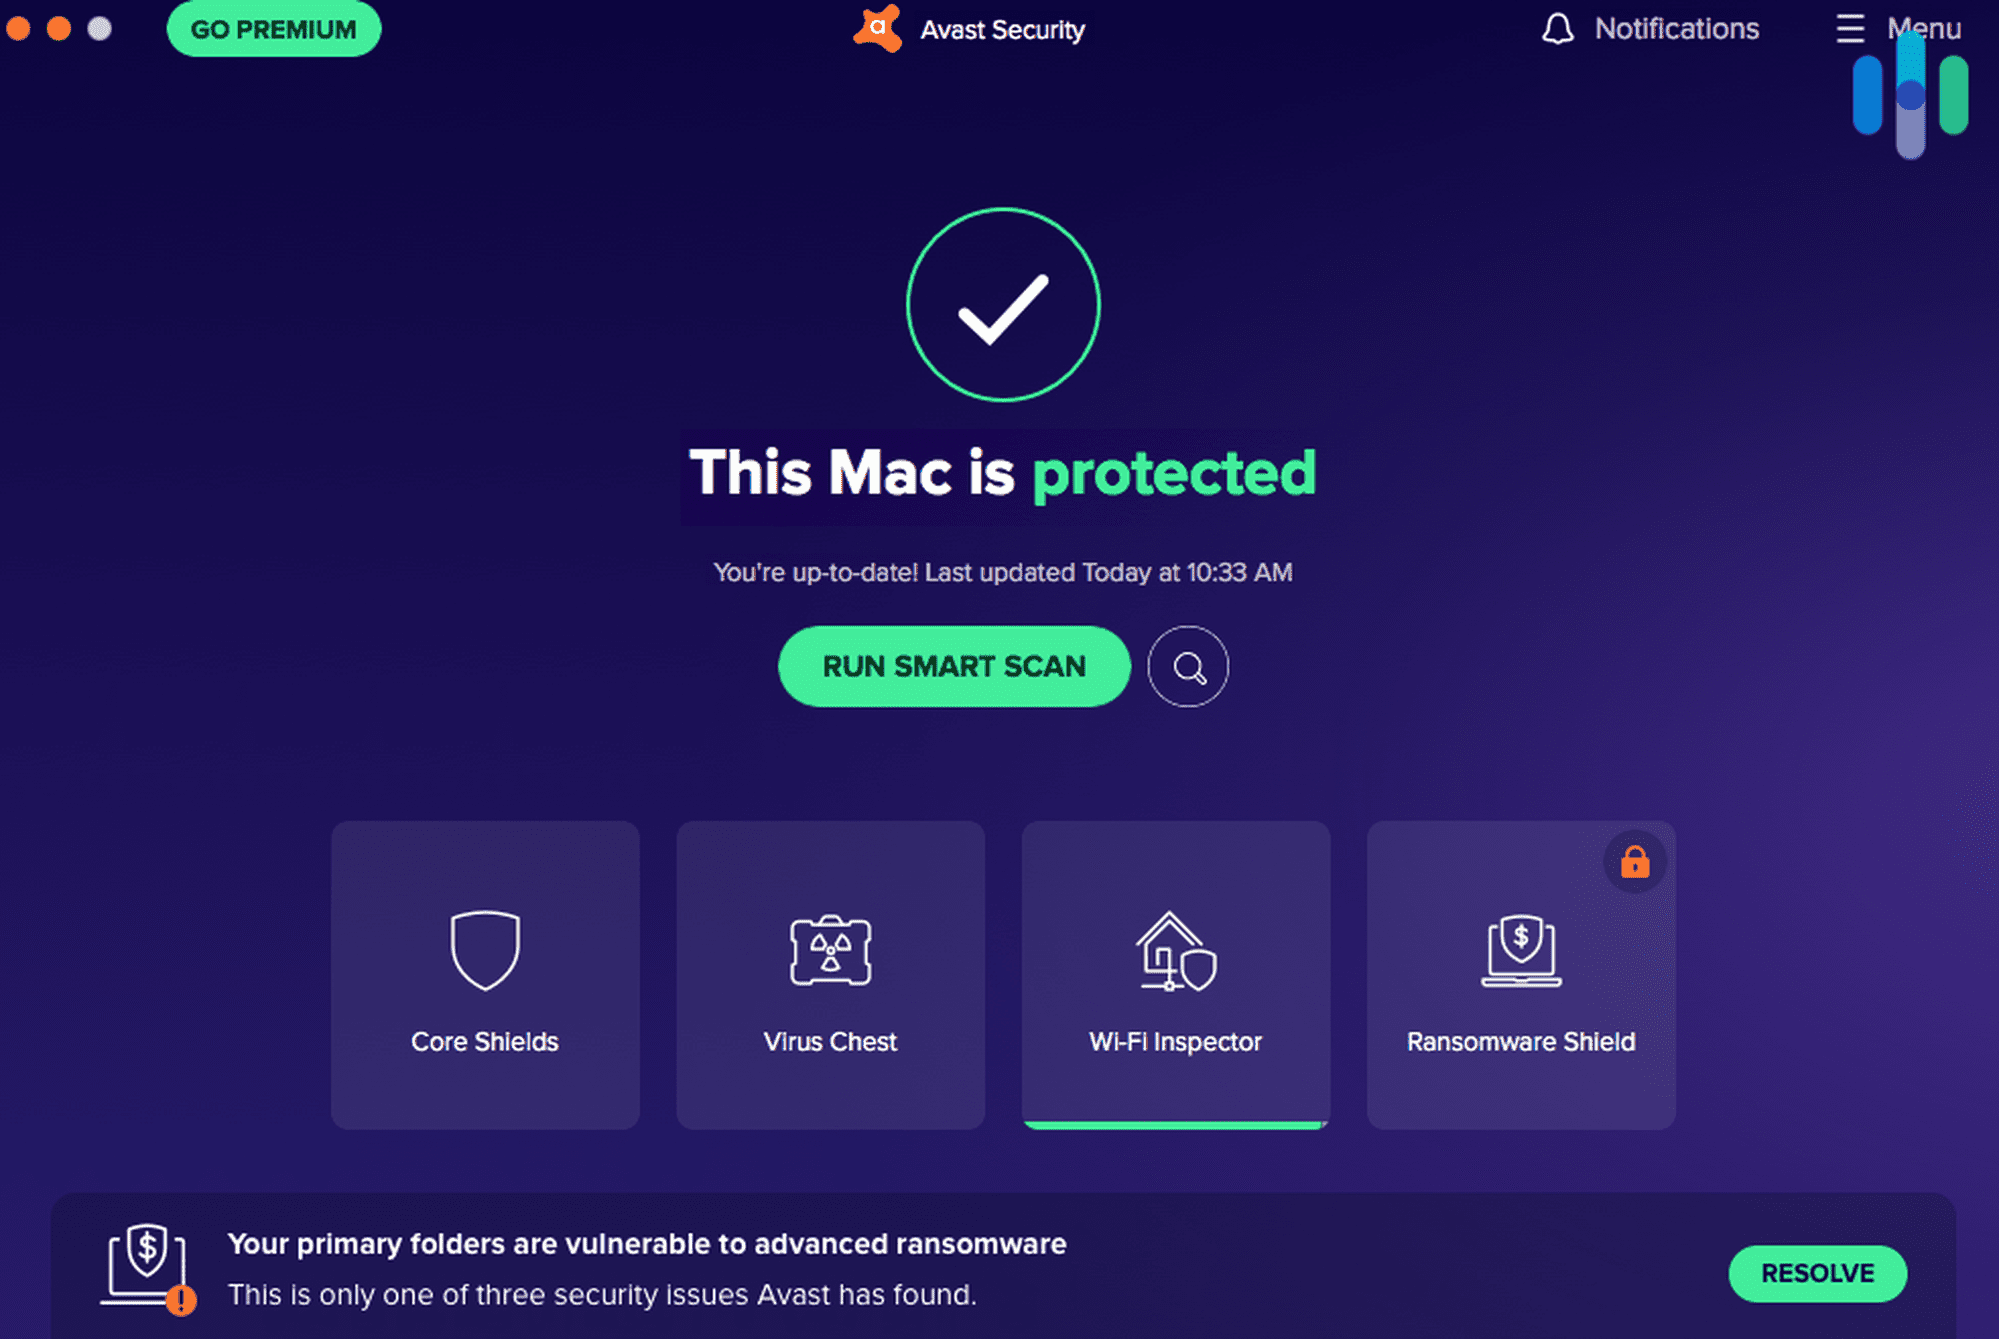 Avast Antivirus - Mac is Protected